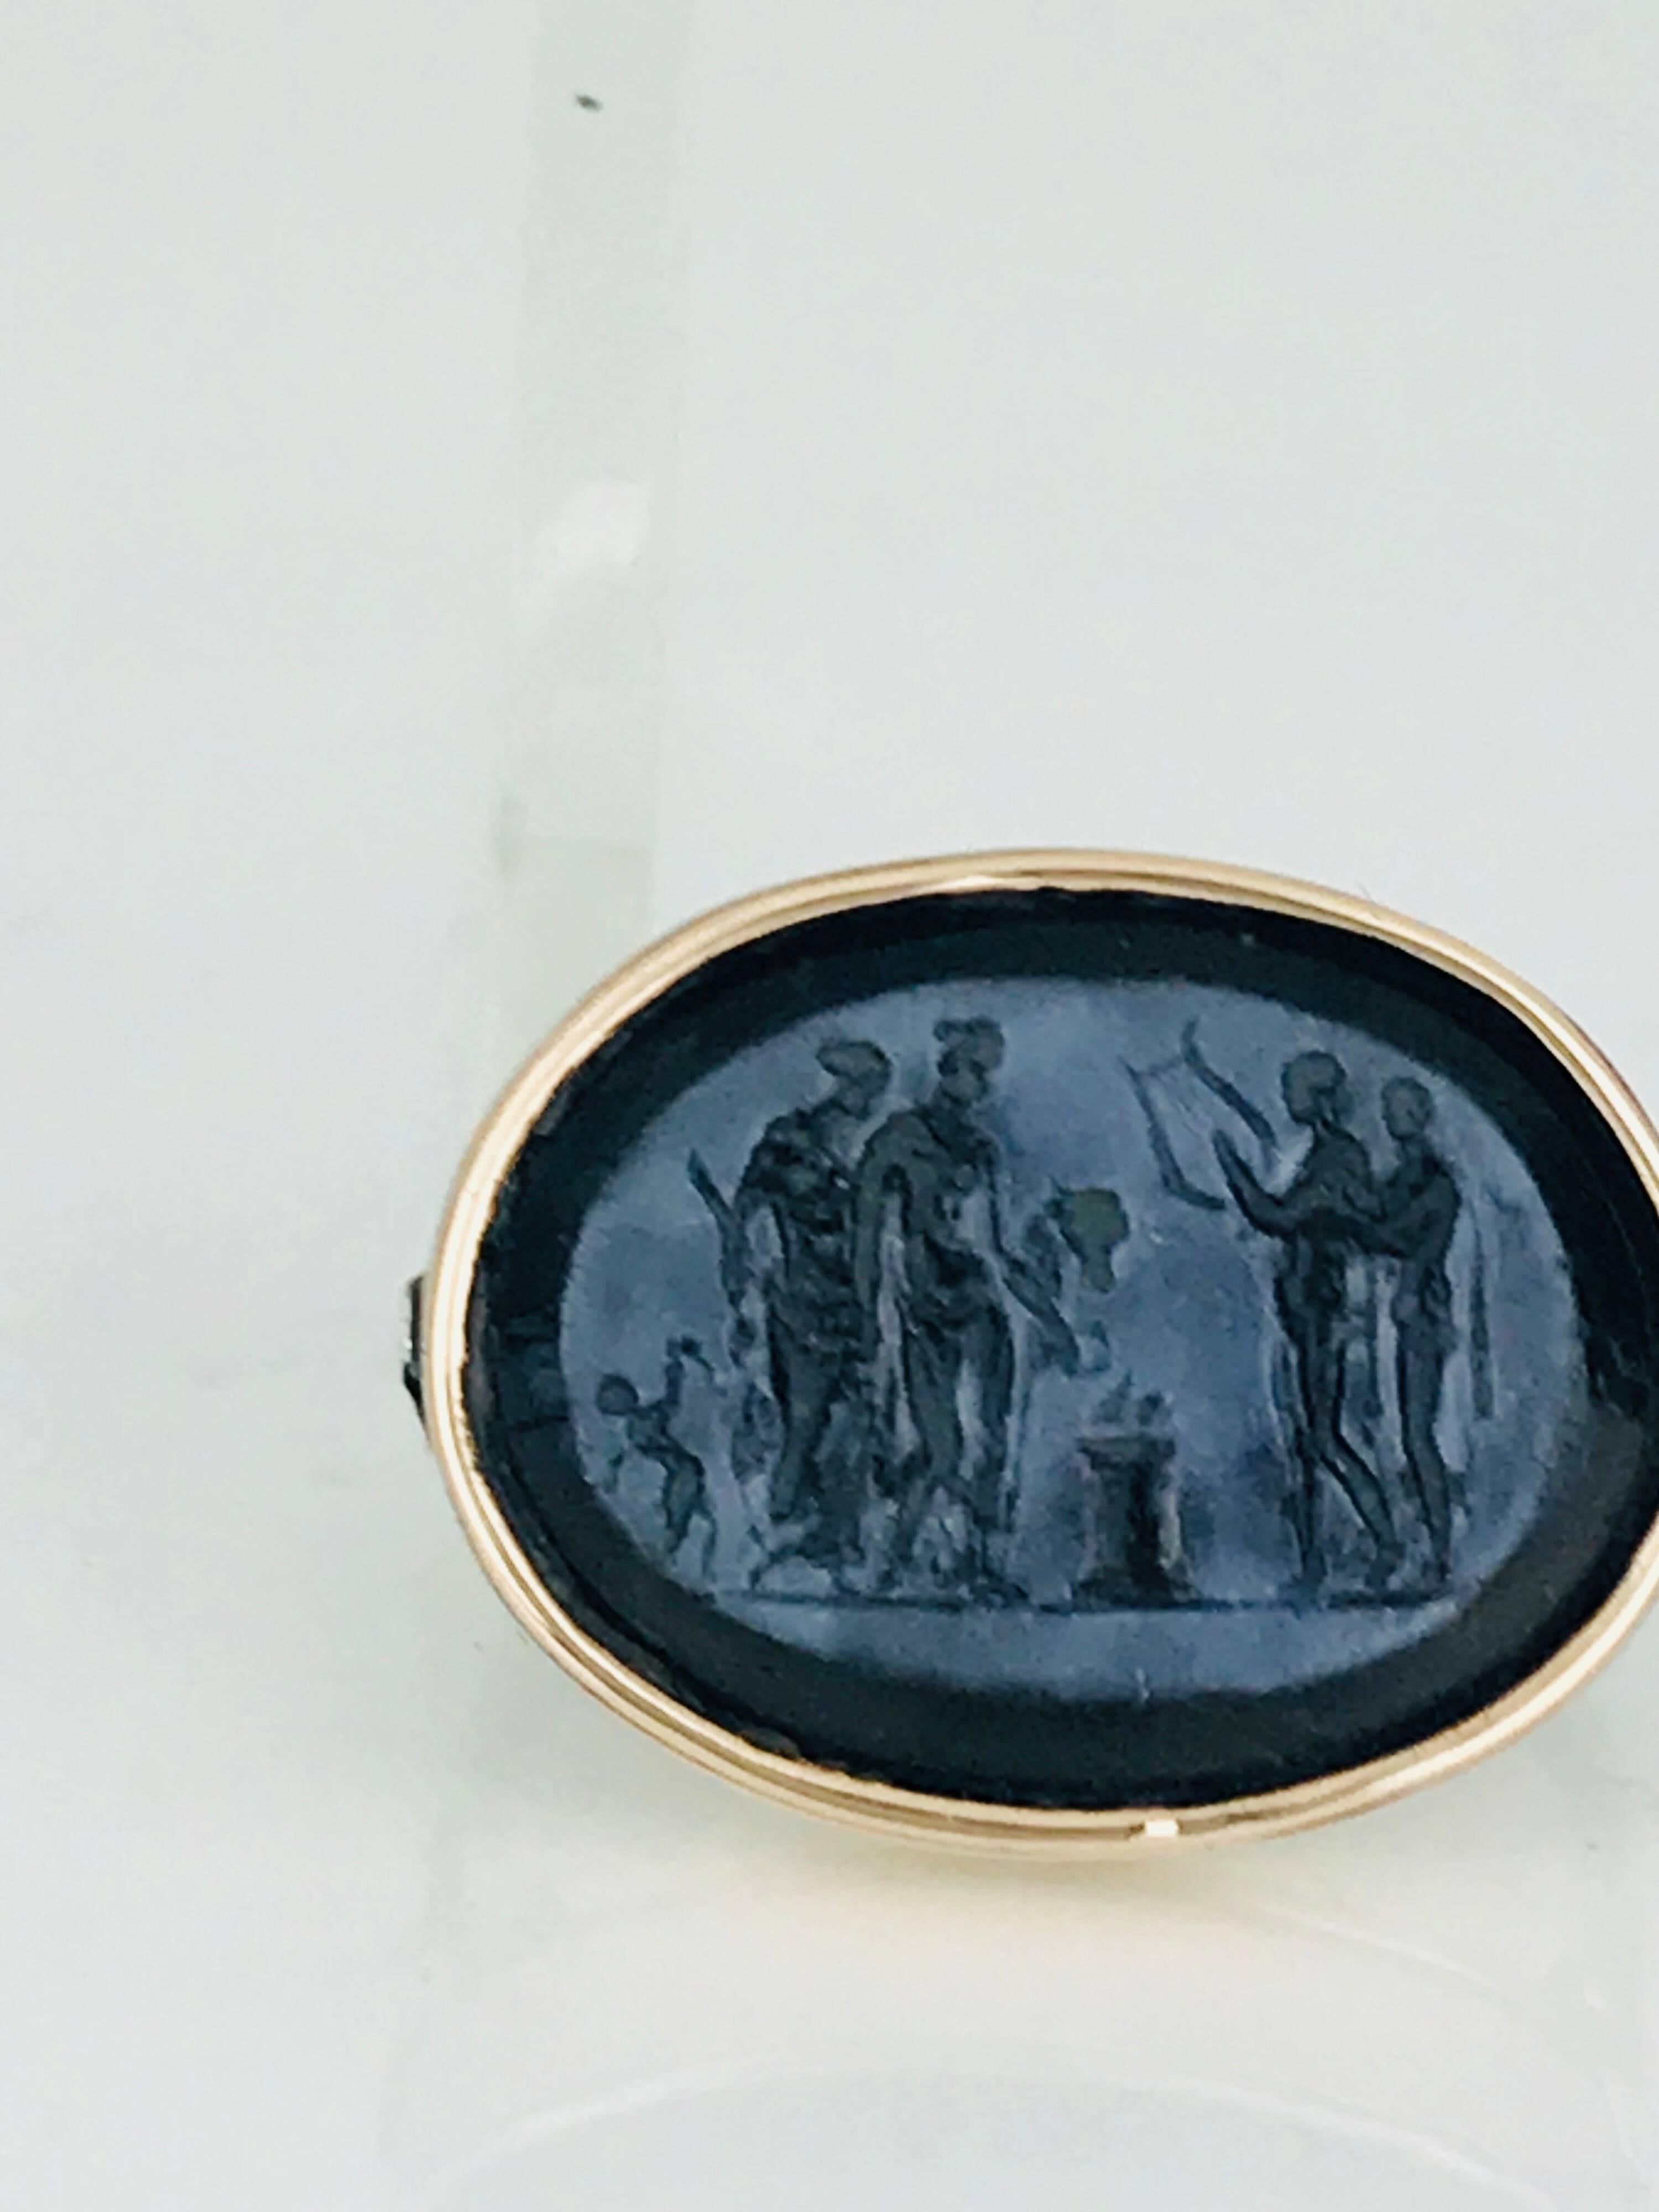 14 Karat Tri-Color Gold Ring, Intaglio Engraved, Oval Onyx Mythological Scene 3